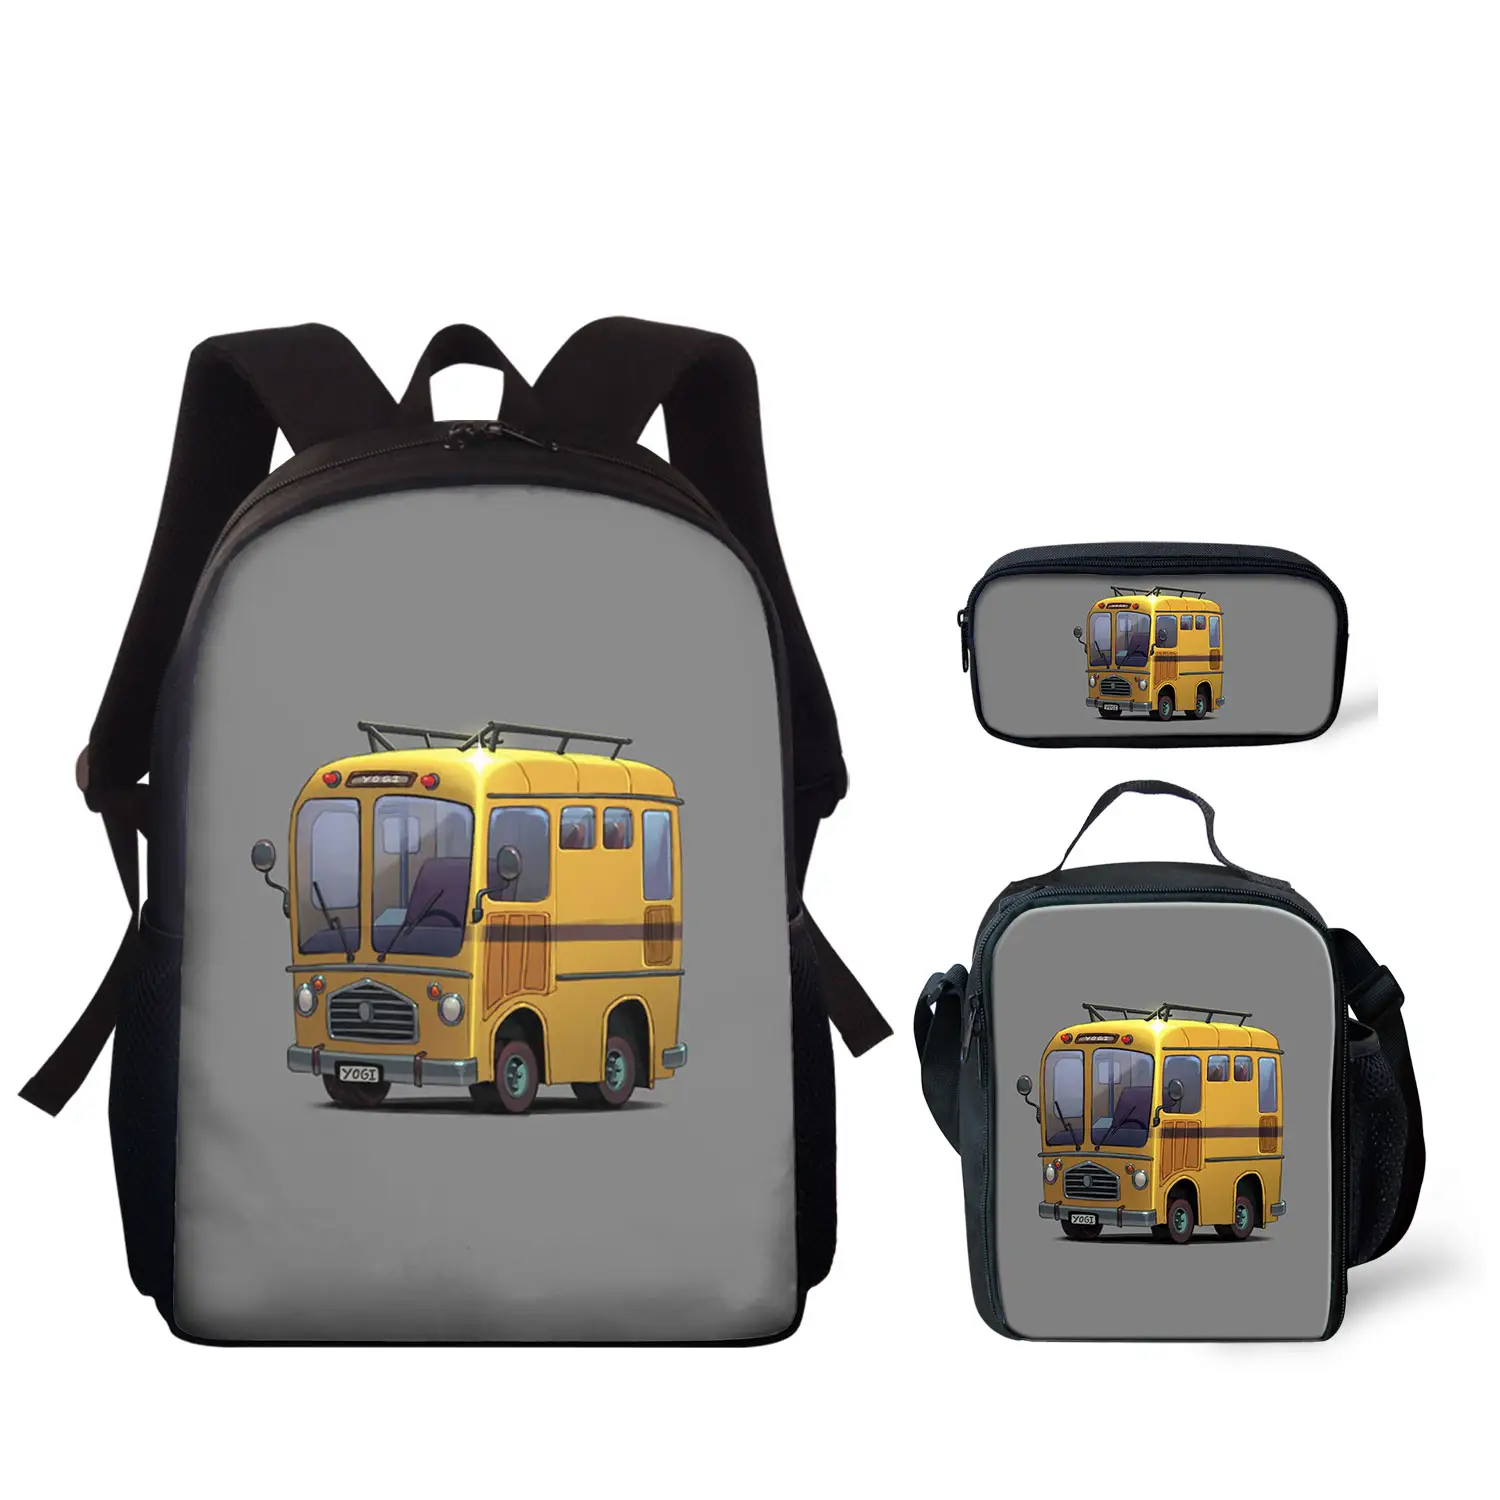 حقيبة صفراء للمدرسة, حقيبة صفراء للمدرسة برسومات كرتونية ومطبوعة بشعار خاص حقائب مدرسية رخيصة من المصنع حقائب كتب للأطفال حقائب مدرسية